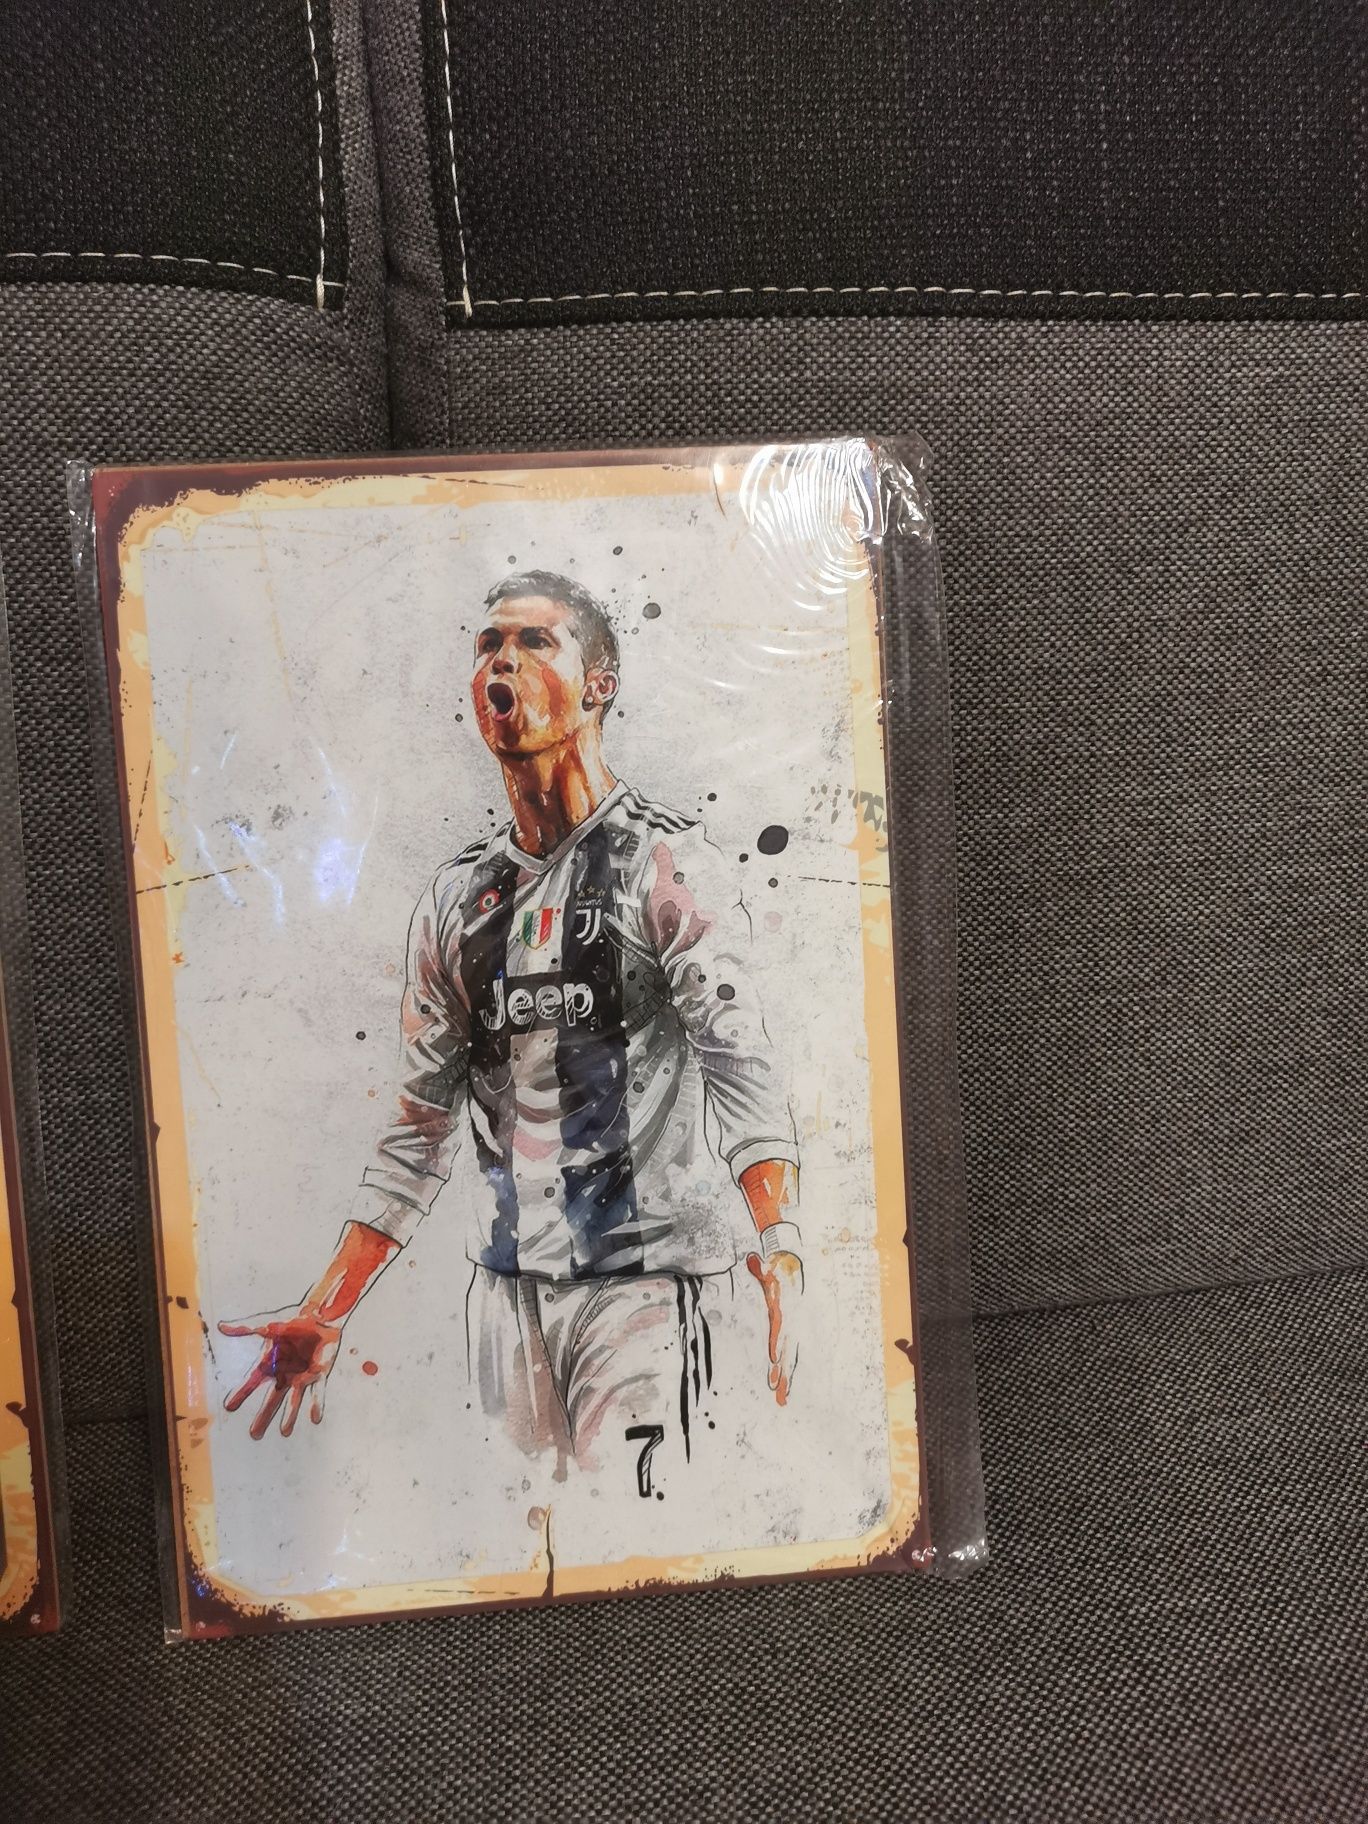 Messi i Ronaldo obrazki